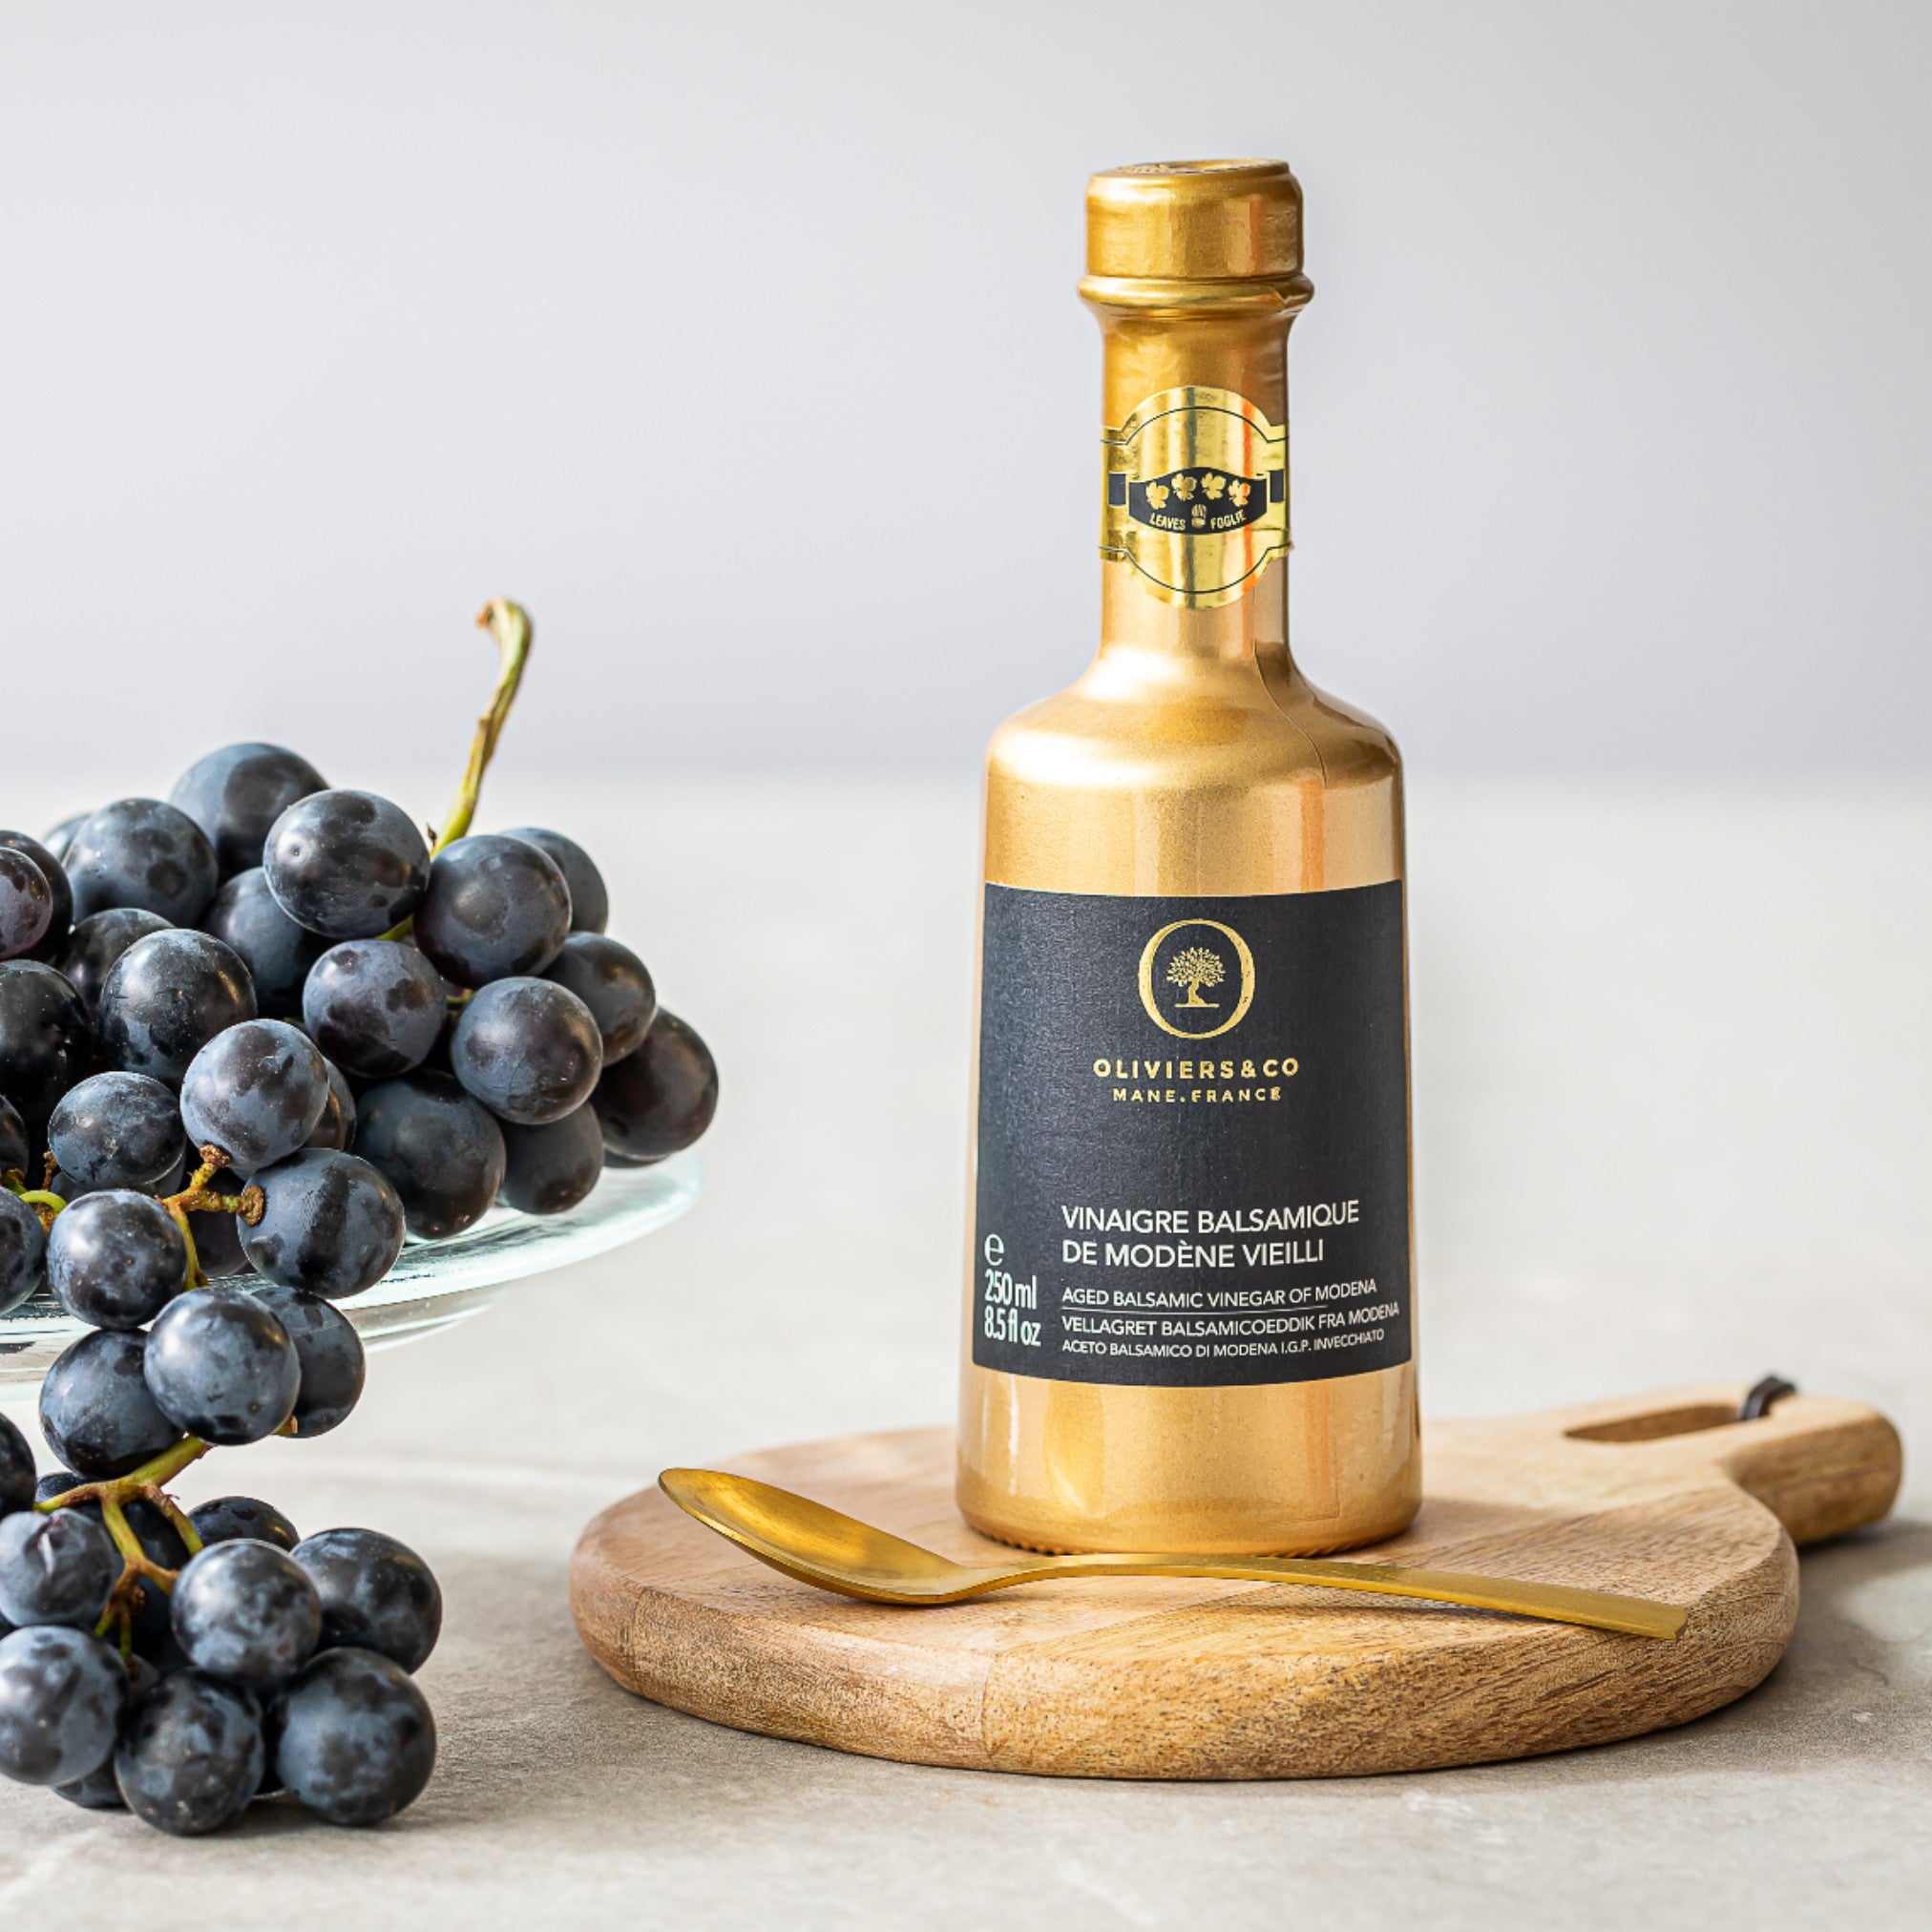 Lagret guldbalsamico på druer fra  Emilia-Romagna, Oliviers & Co